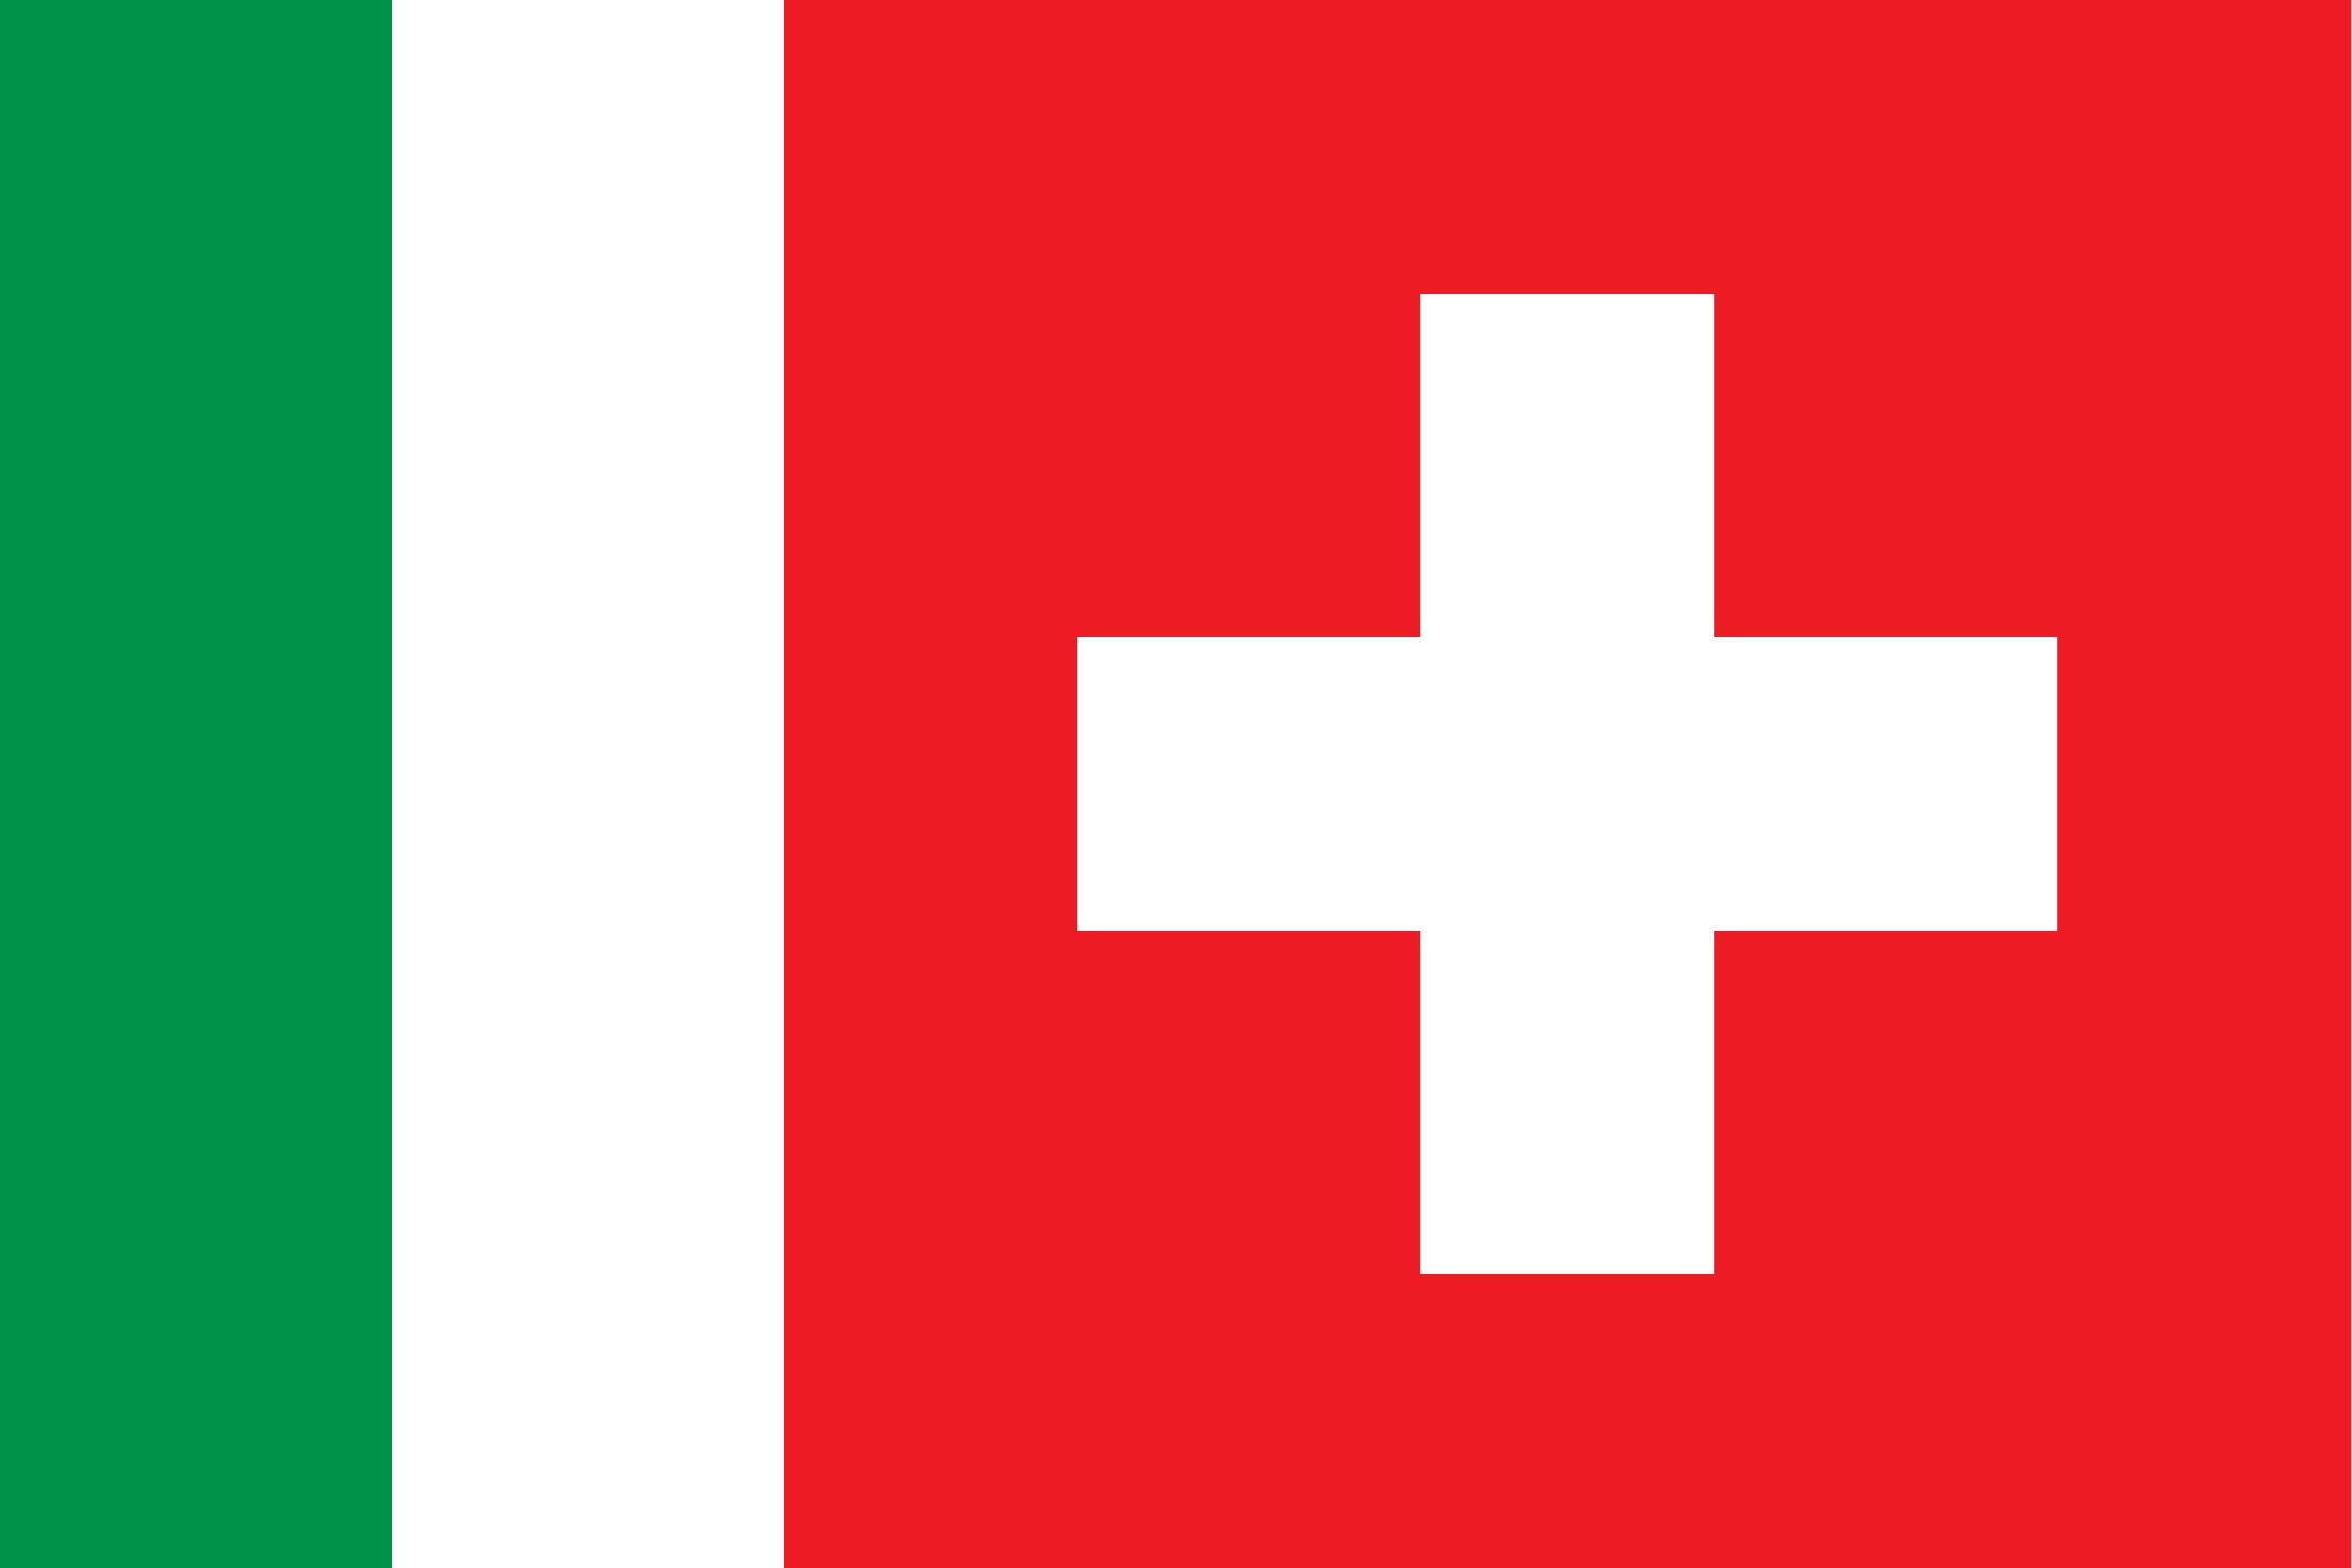 Italian-speaking Switzerland (Svizzera italiana) png